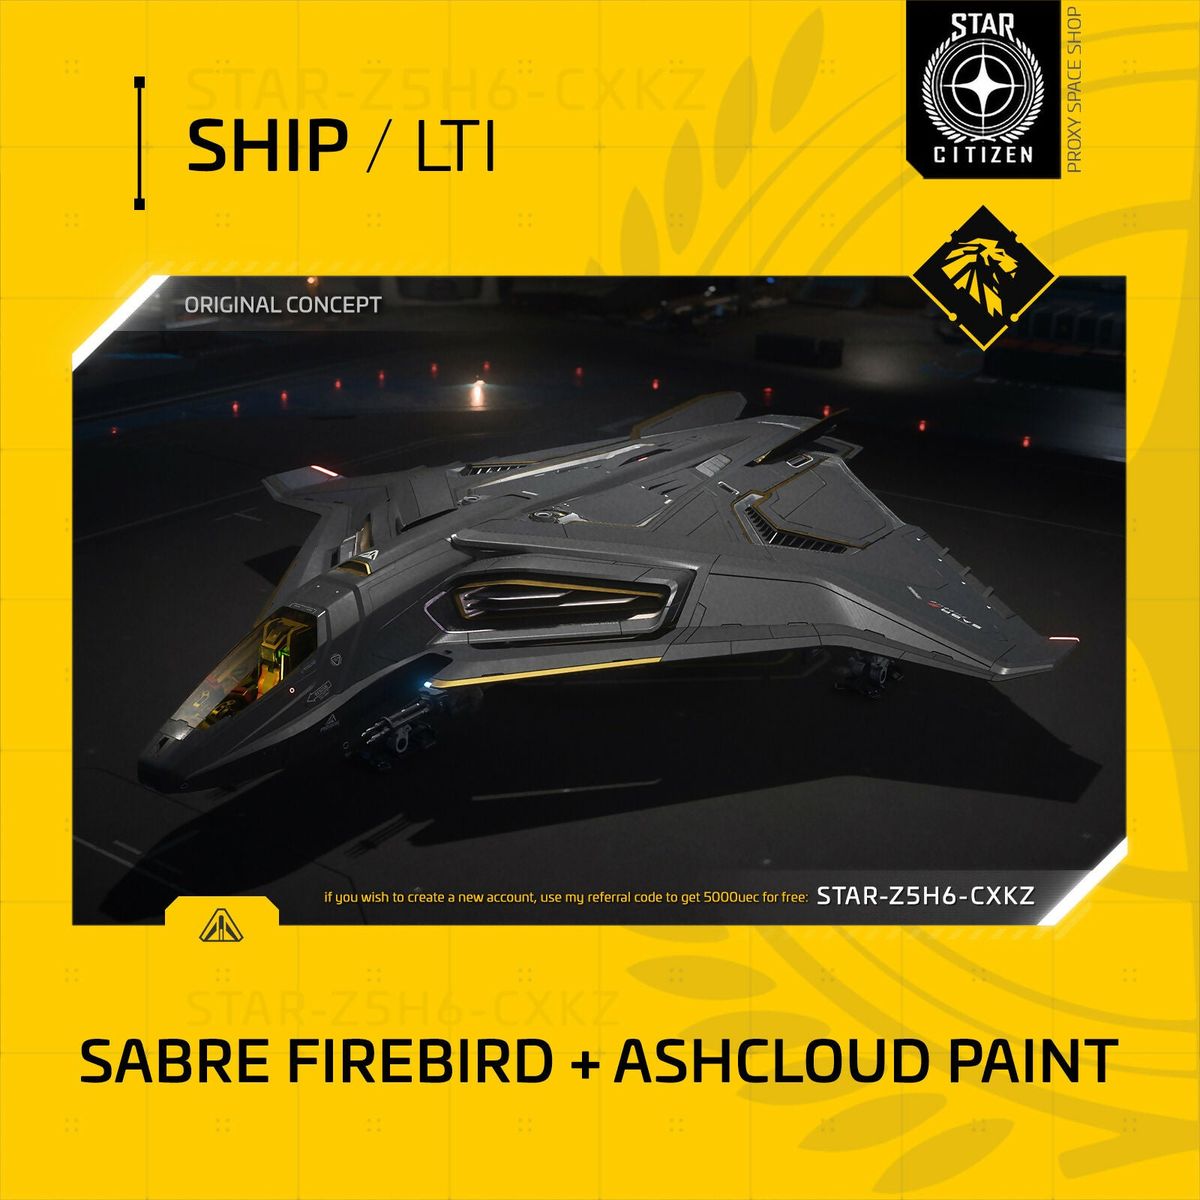 Aegis Sabre Firebird + Ashcloud Paint - Lti - Original Concept OC